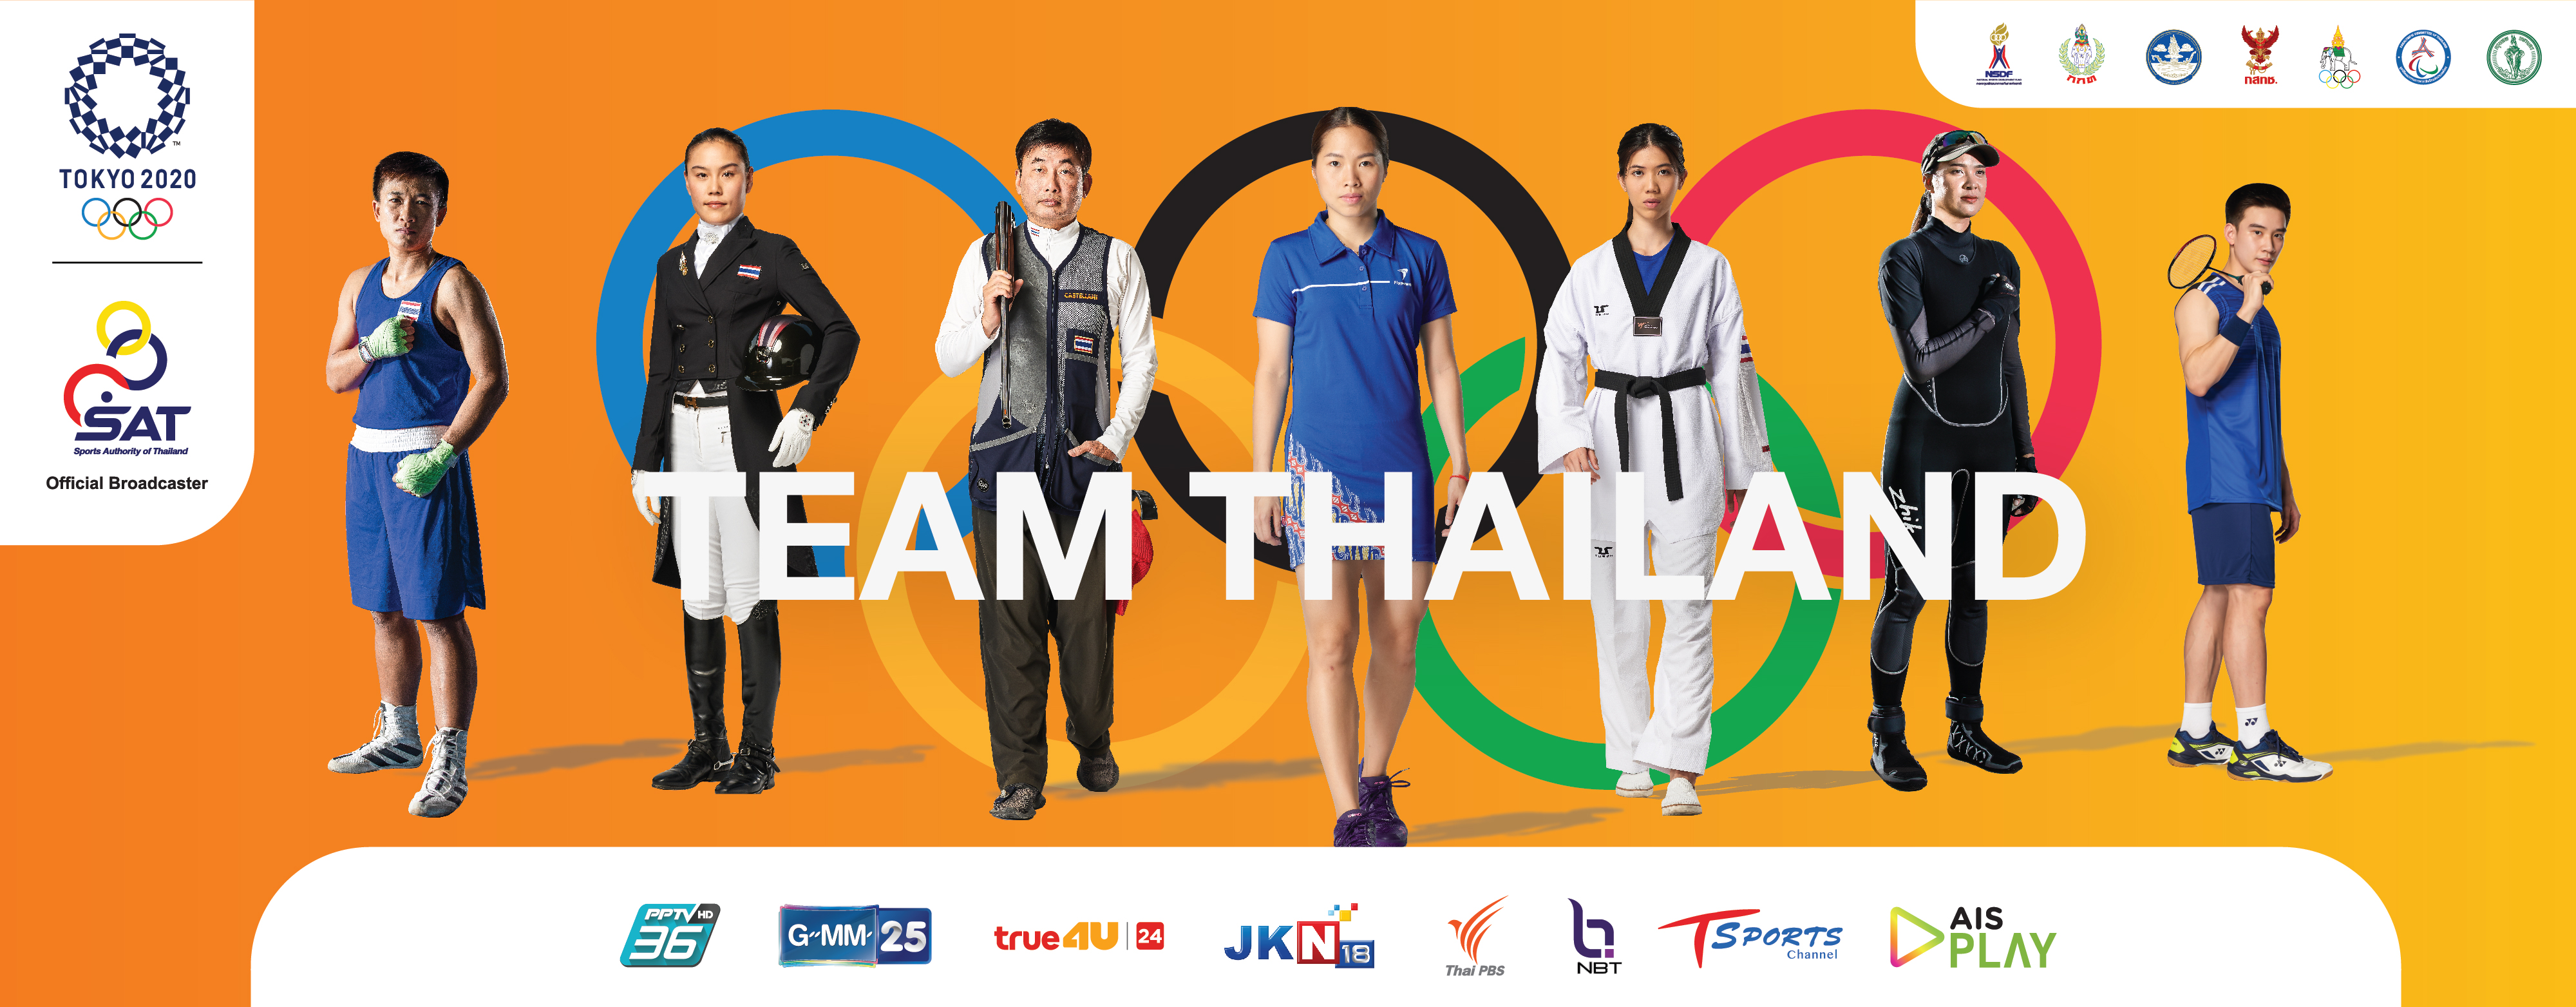 แมตช์นี้มาแน่ เชียร์ 41 นักกีฬาไทย ในมิชชันโอลิมปิกเกมส์ 2020 ผ่าน AIS PLAY